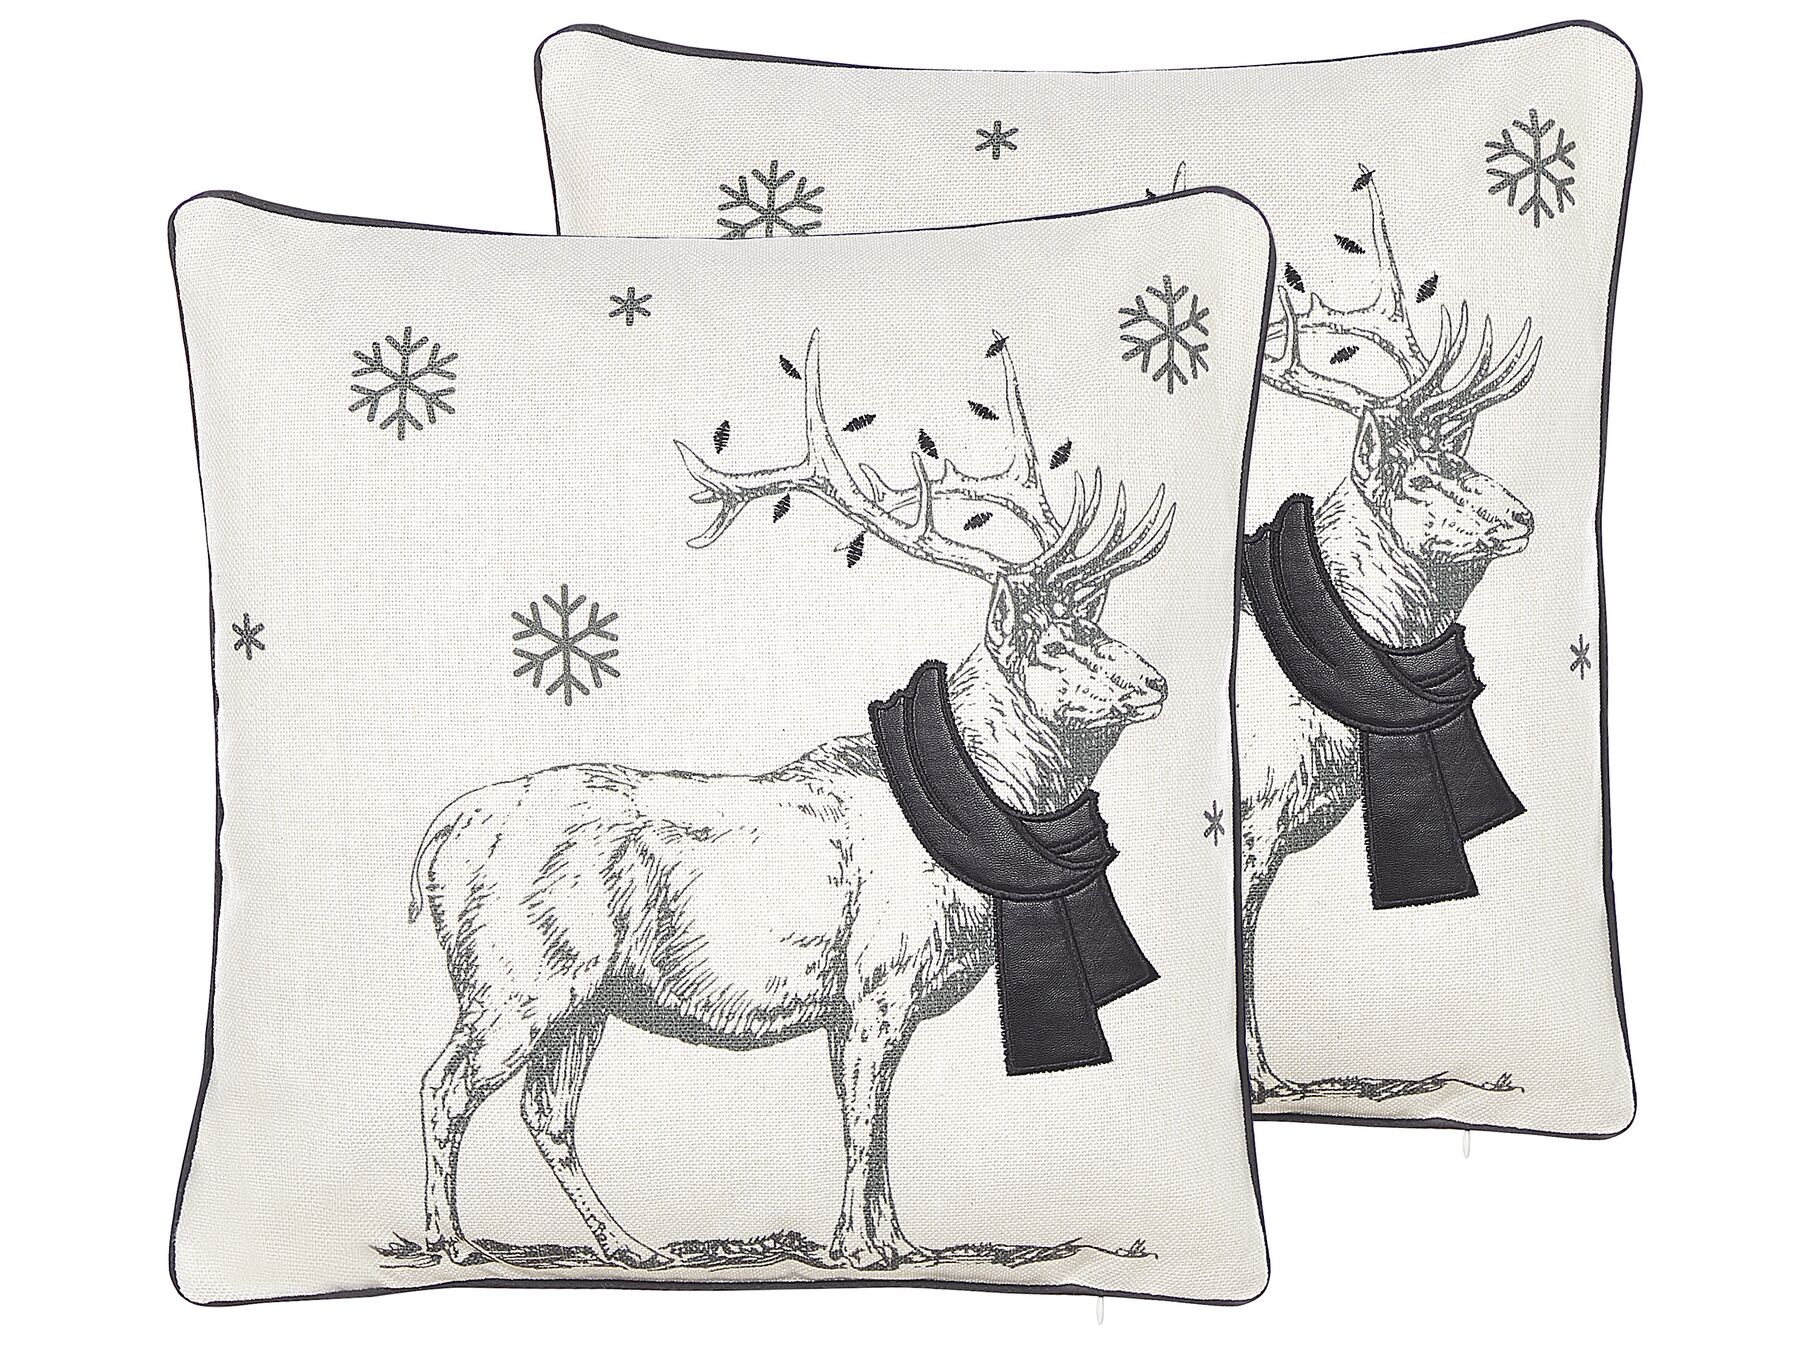 Sada 2 dekorativních polštářů s vánočním motivem 45 x 45 cm černé/bílé SVEN_814104